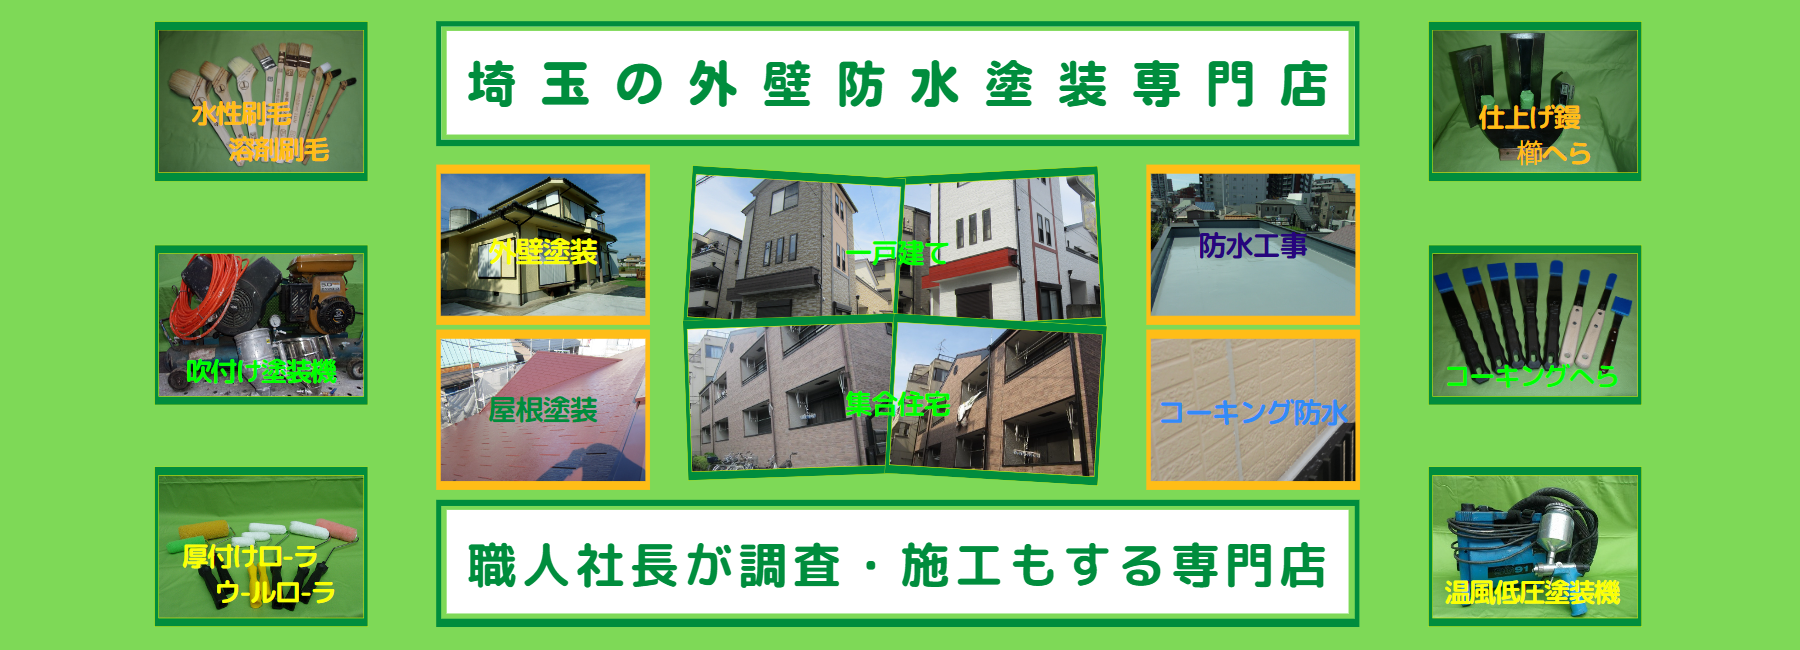 埼玉の外壁防水塗装塗装専門店